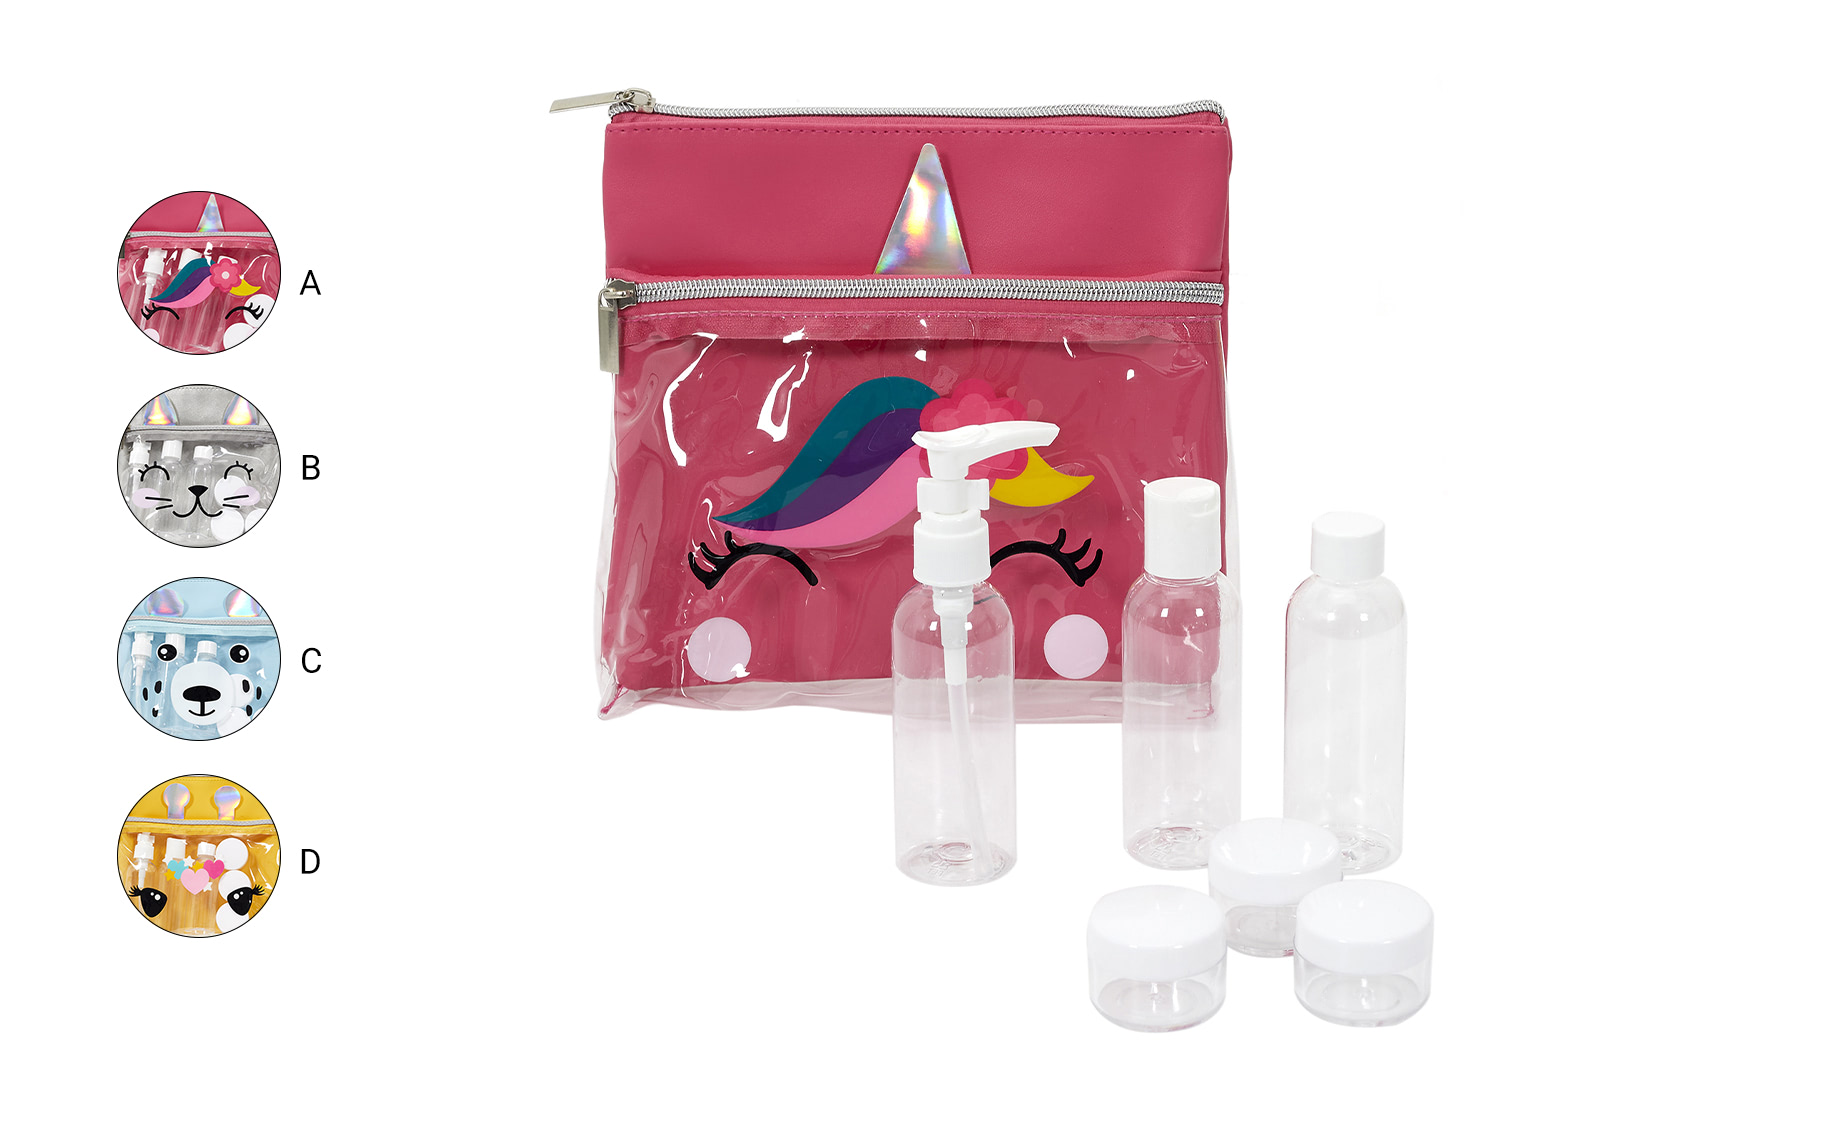 Putna kozmetička torbica sa 6 praznih bočica Cutie više boja